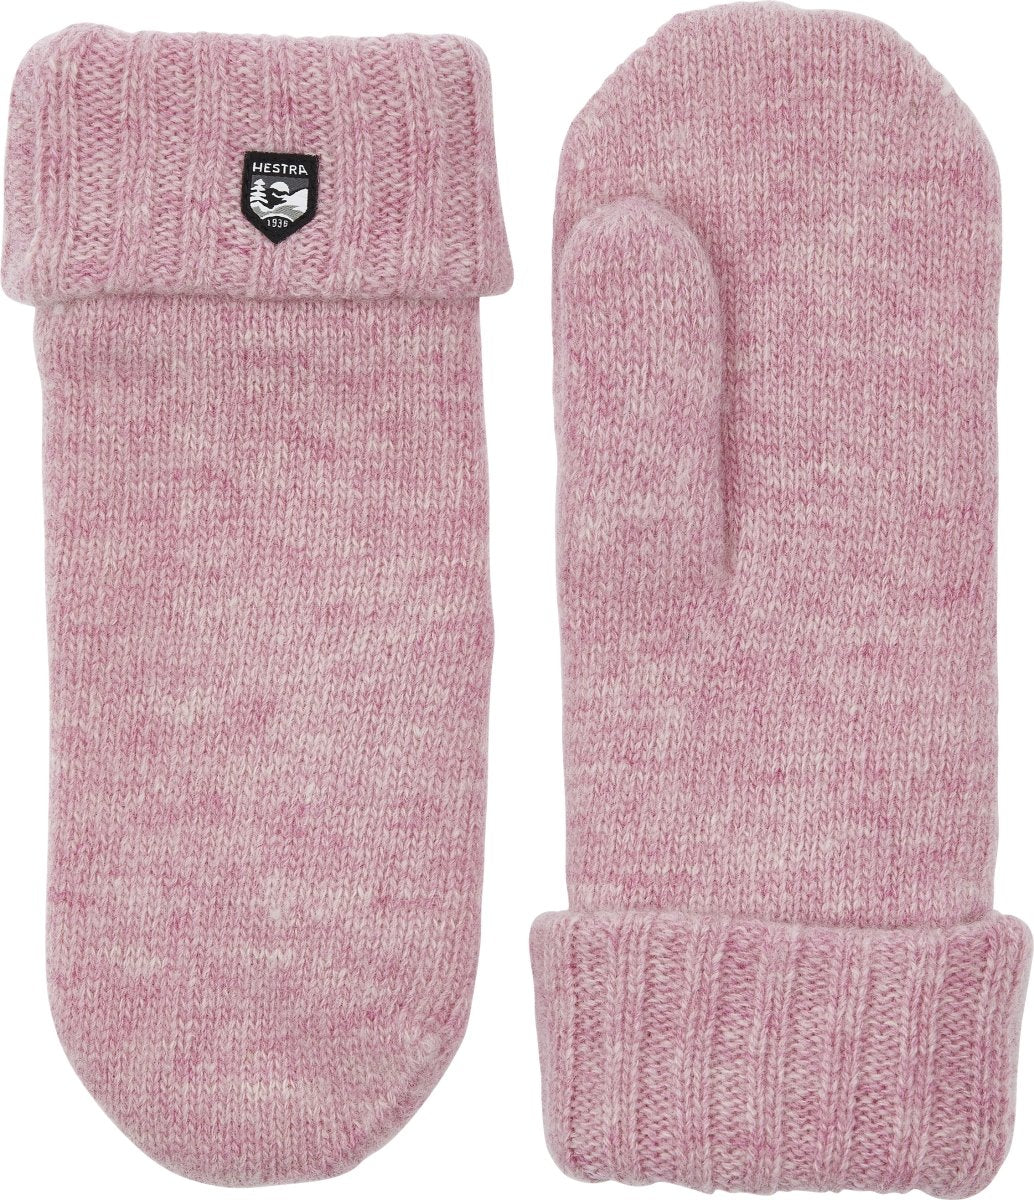 Hestra Bonnie knit mitt Pink 63491 - KYOTO - Hestra